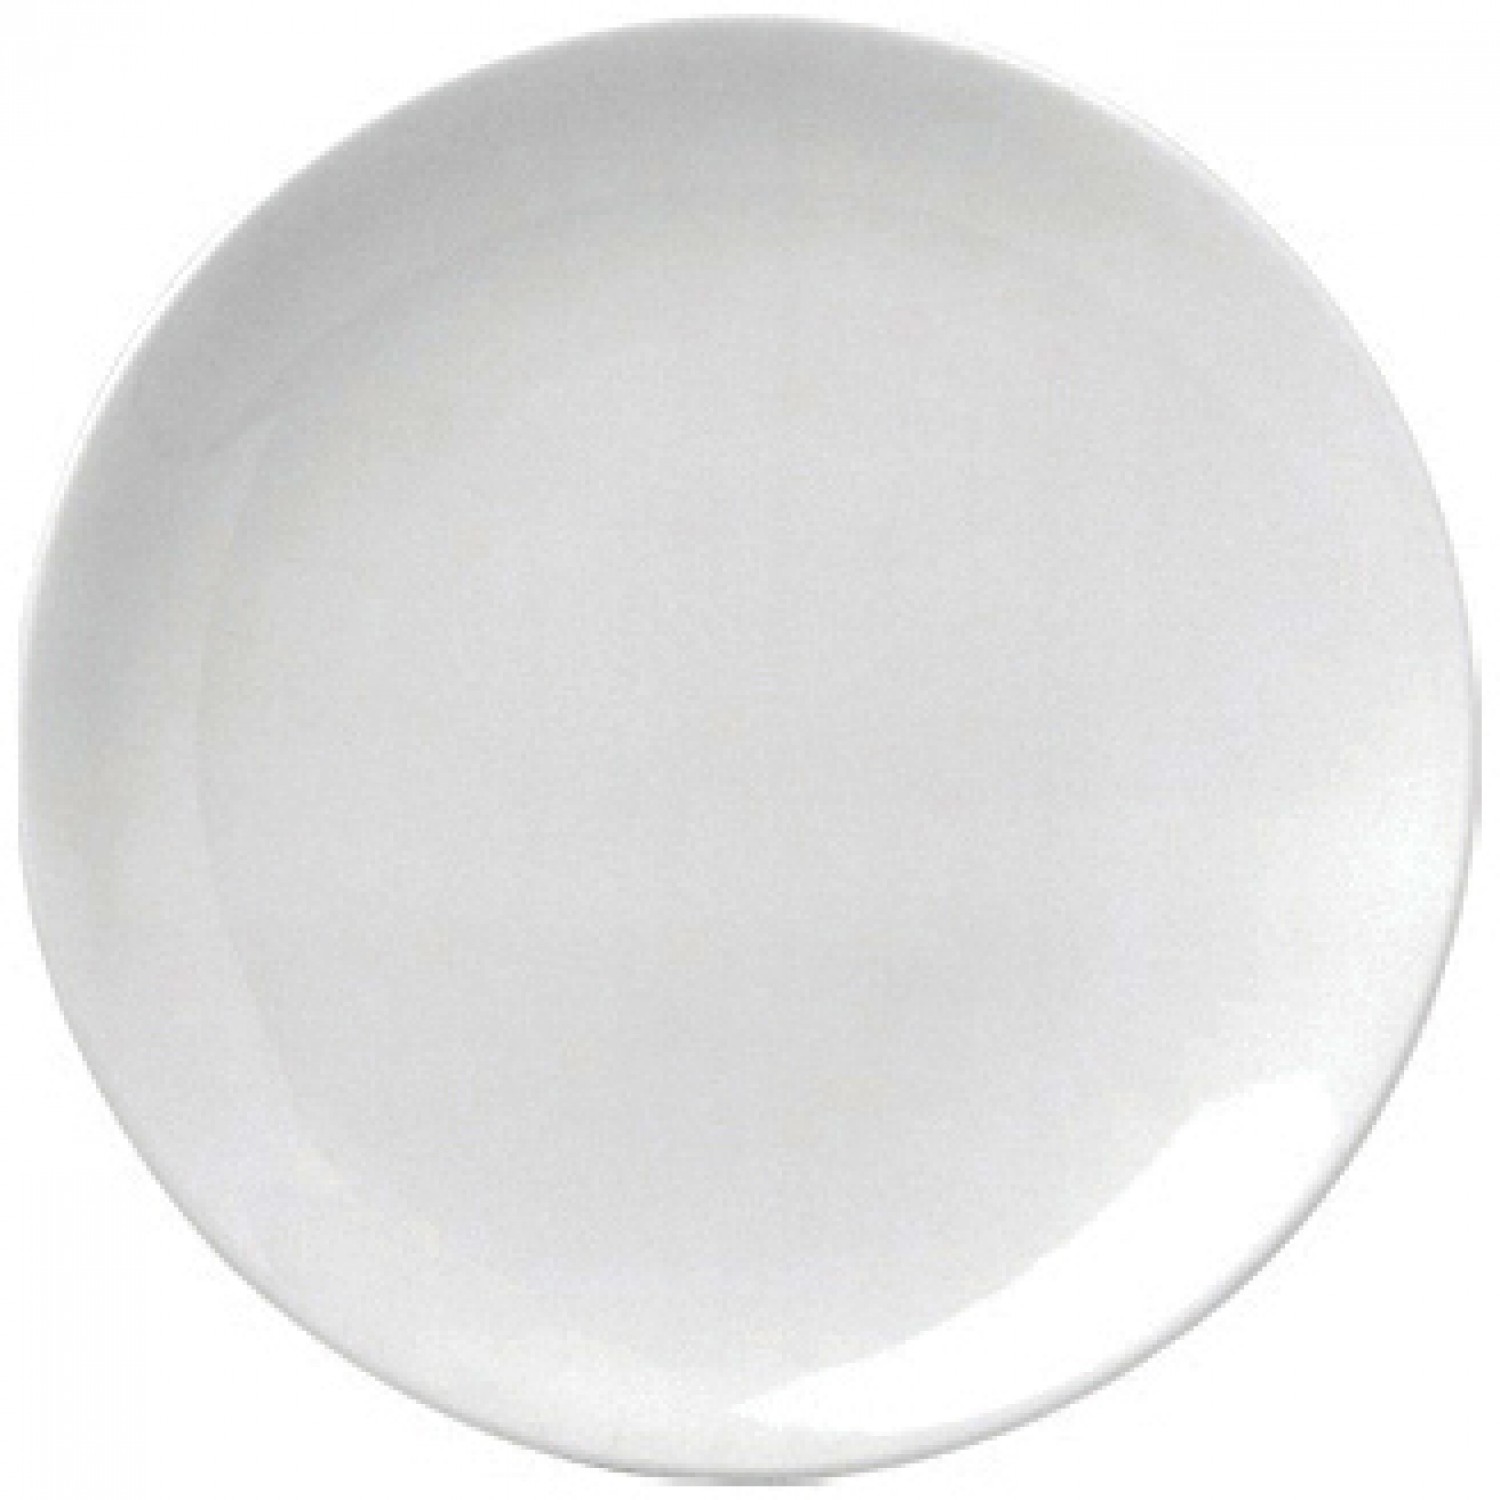 Πιάτο Ρηχό Στρογγυλό Coupe 19cm Άσπρο Πορσελάνης "ΕΟ" Gural 52.84003